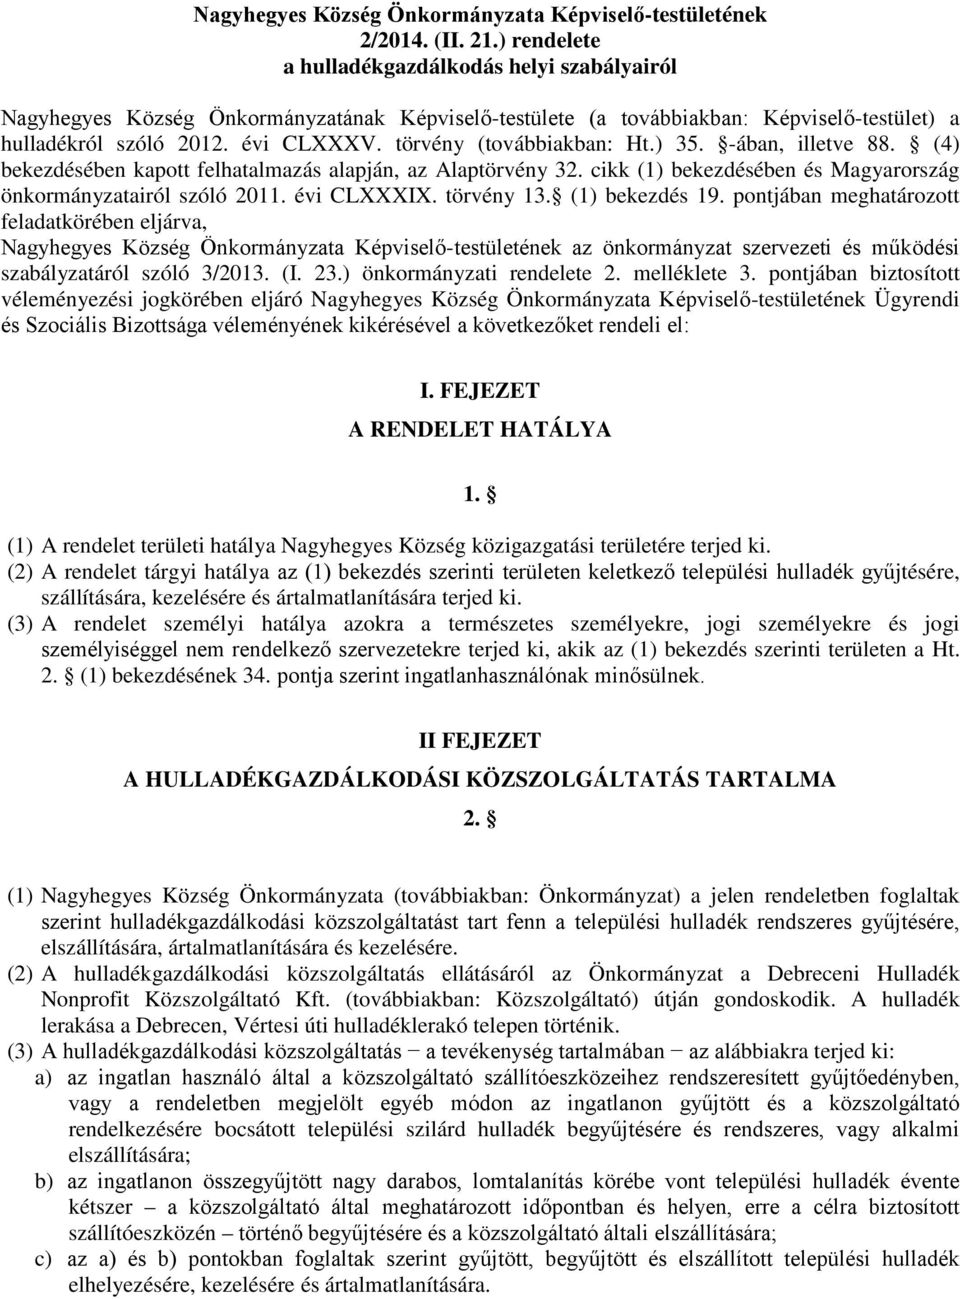 törvény (továbbiakban: Ht.) 35. -ában, illetve 88. (4) bekezdésében kapott felhatalmazás alapján, az Alaptörvény 32. cikk (1) bekezdésében és Magyarország önkormányzatairól szóló 2011. évi CLXXXIX.